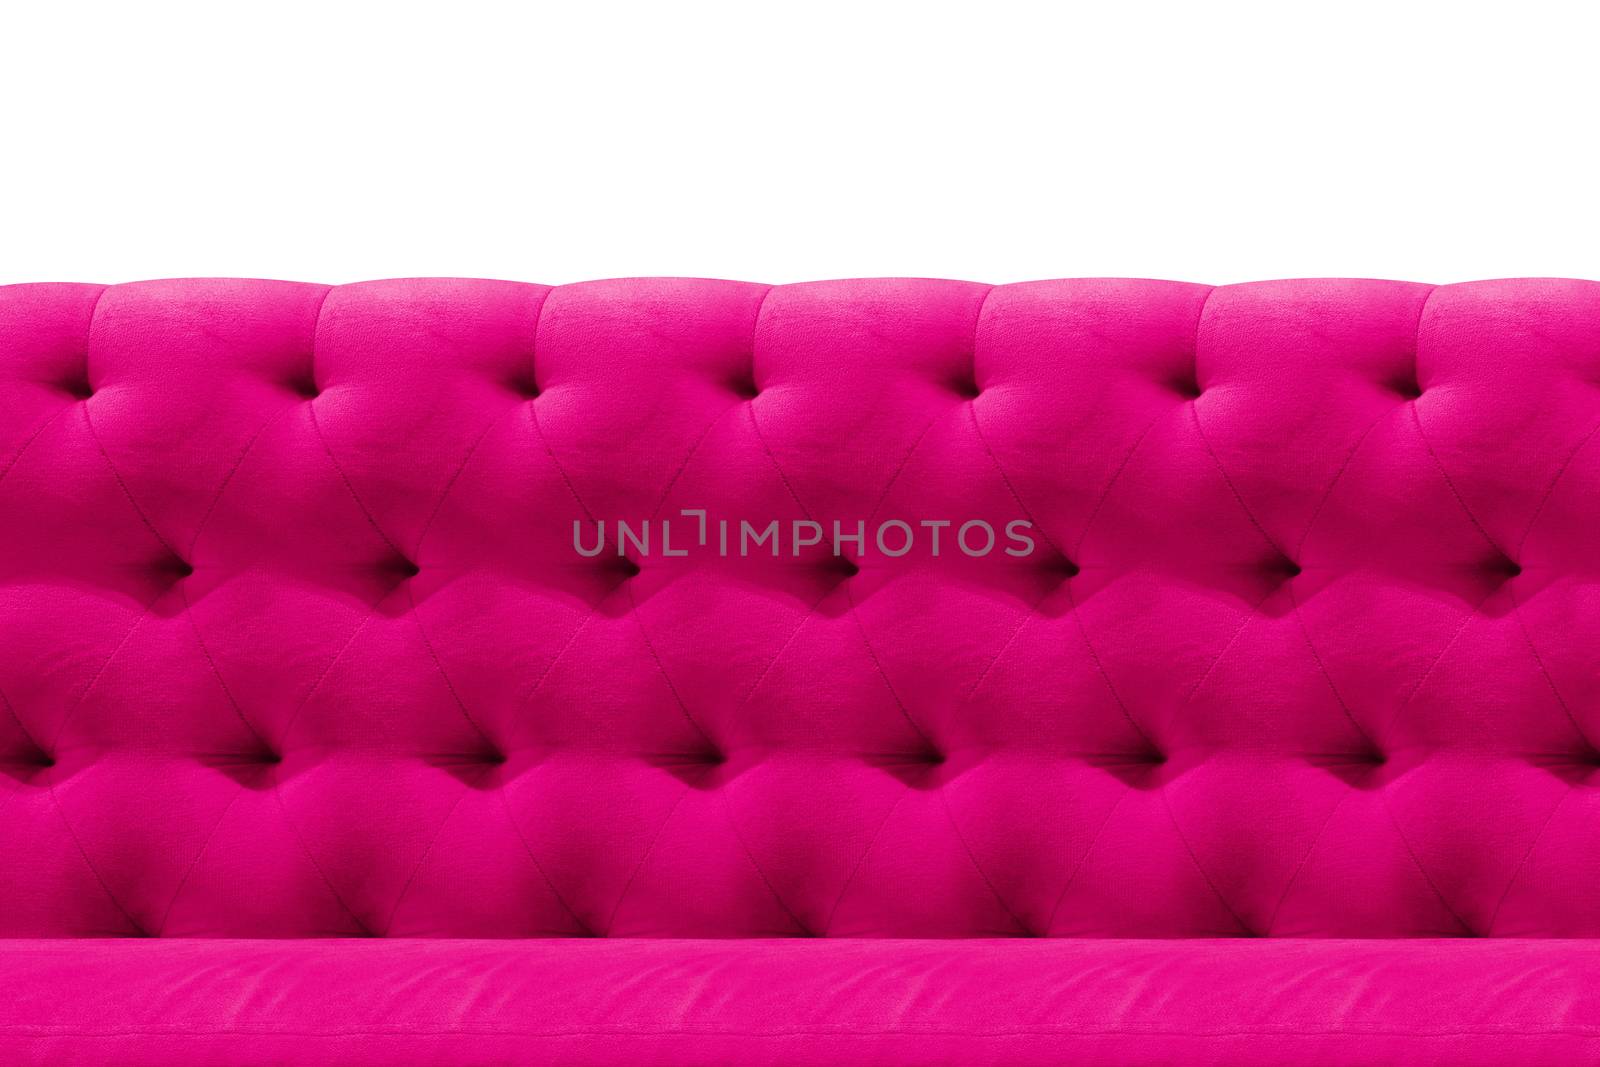 Luxury Pink sofa velvet cushion close-up pattern background on white